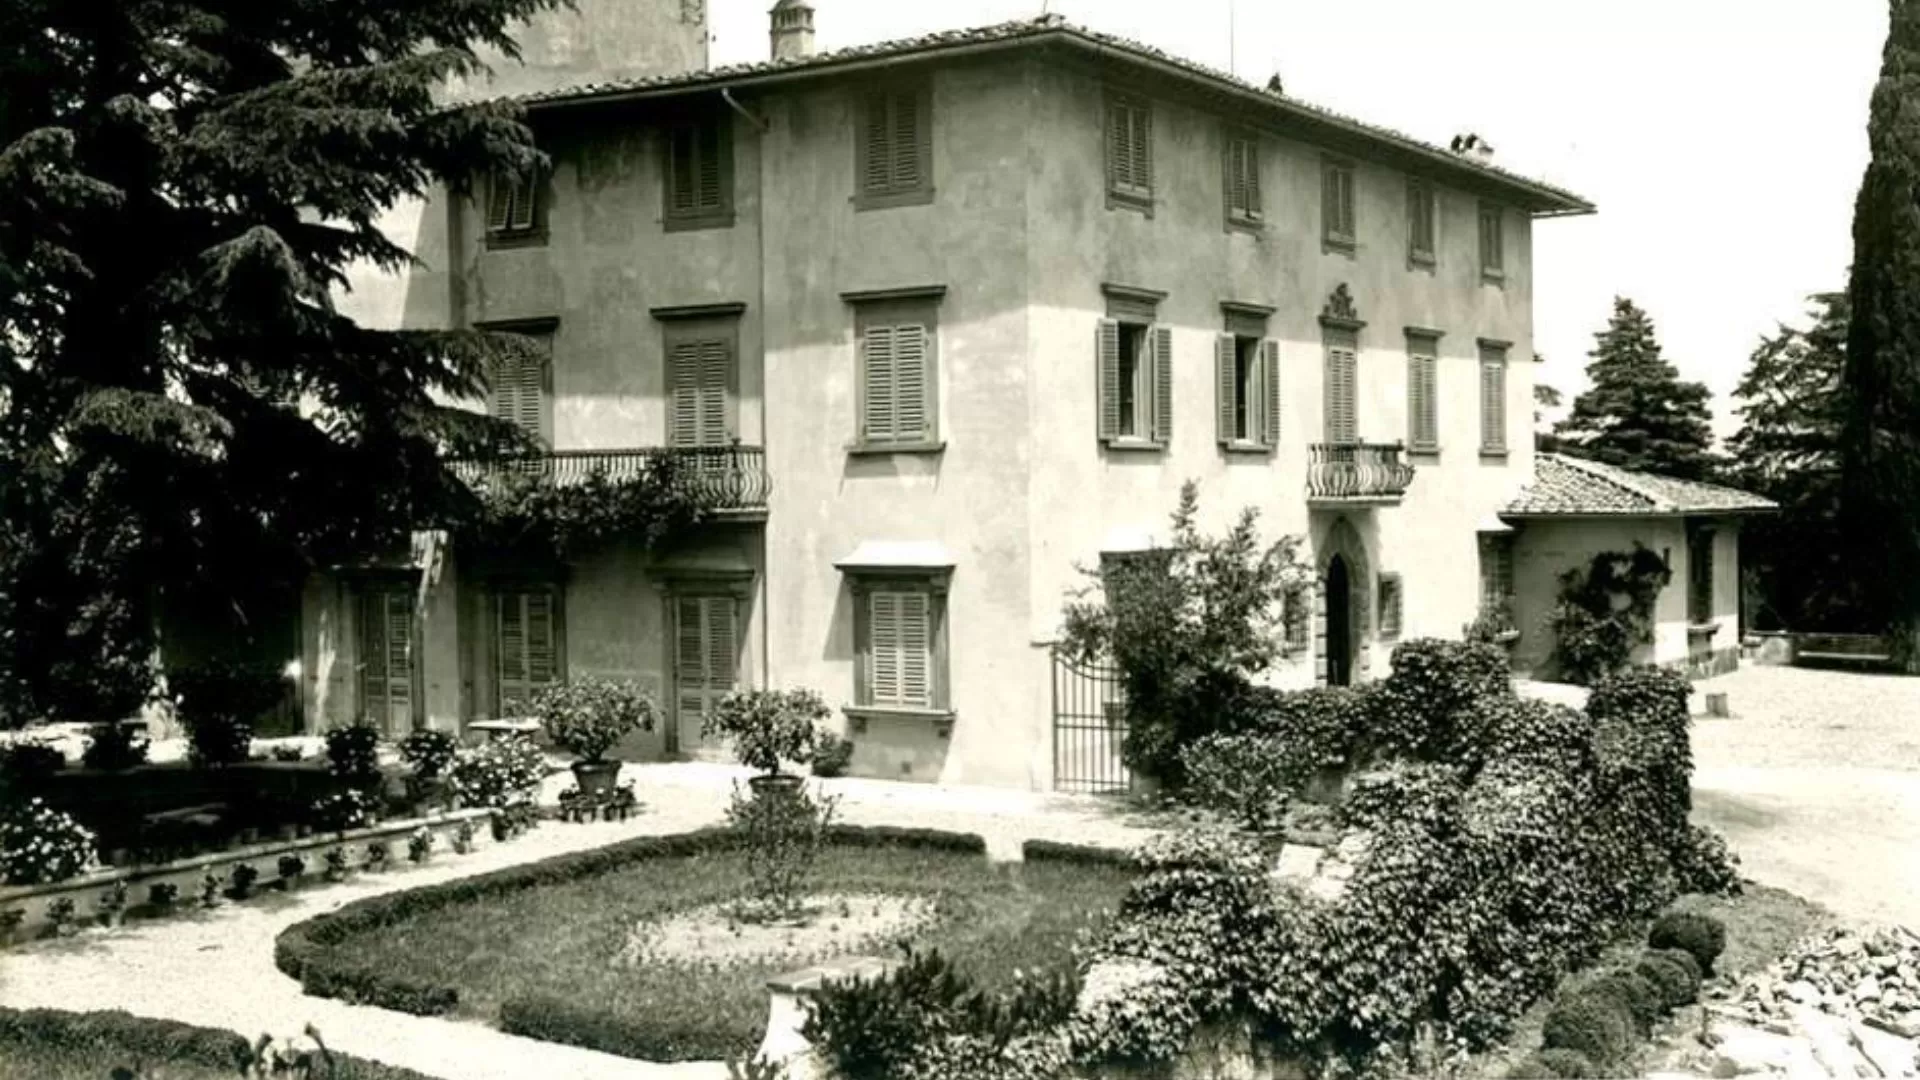 Villa Giramente in una immagine degli anni 30 del Novecento